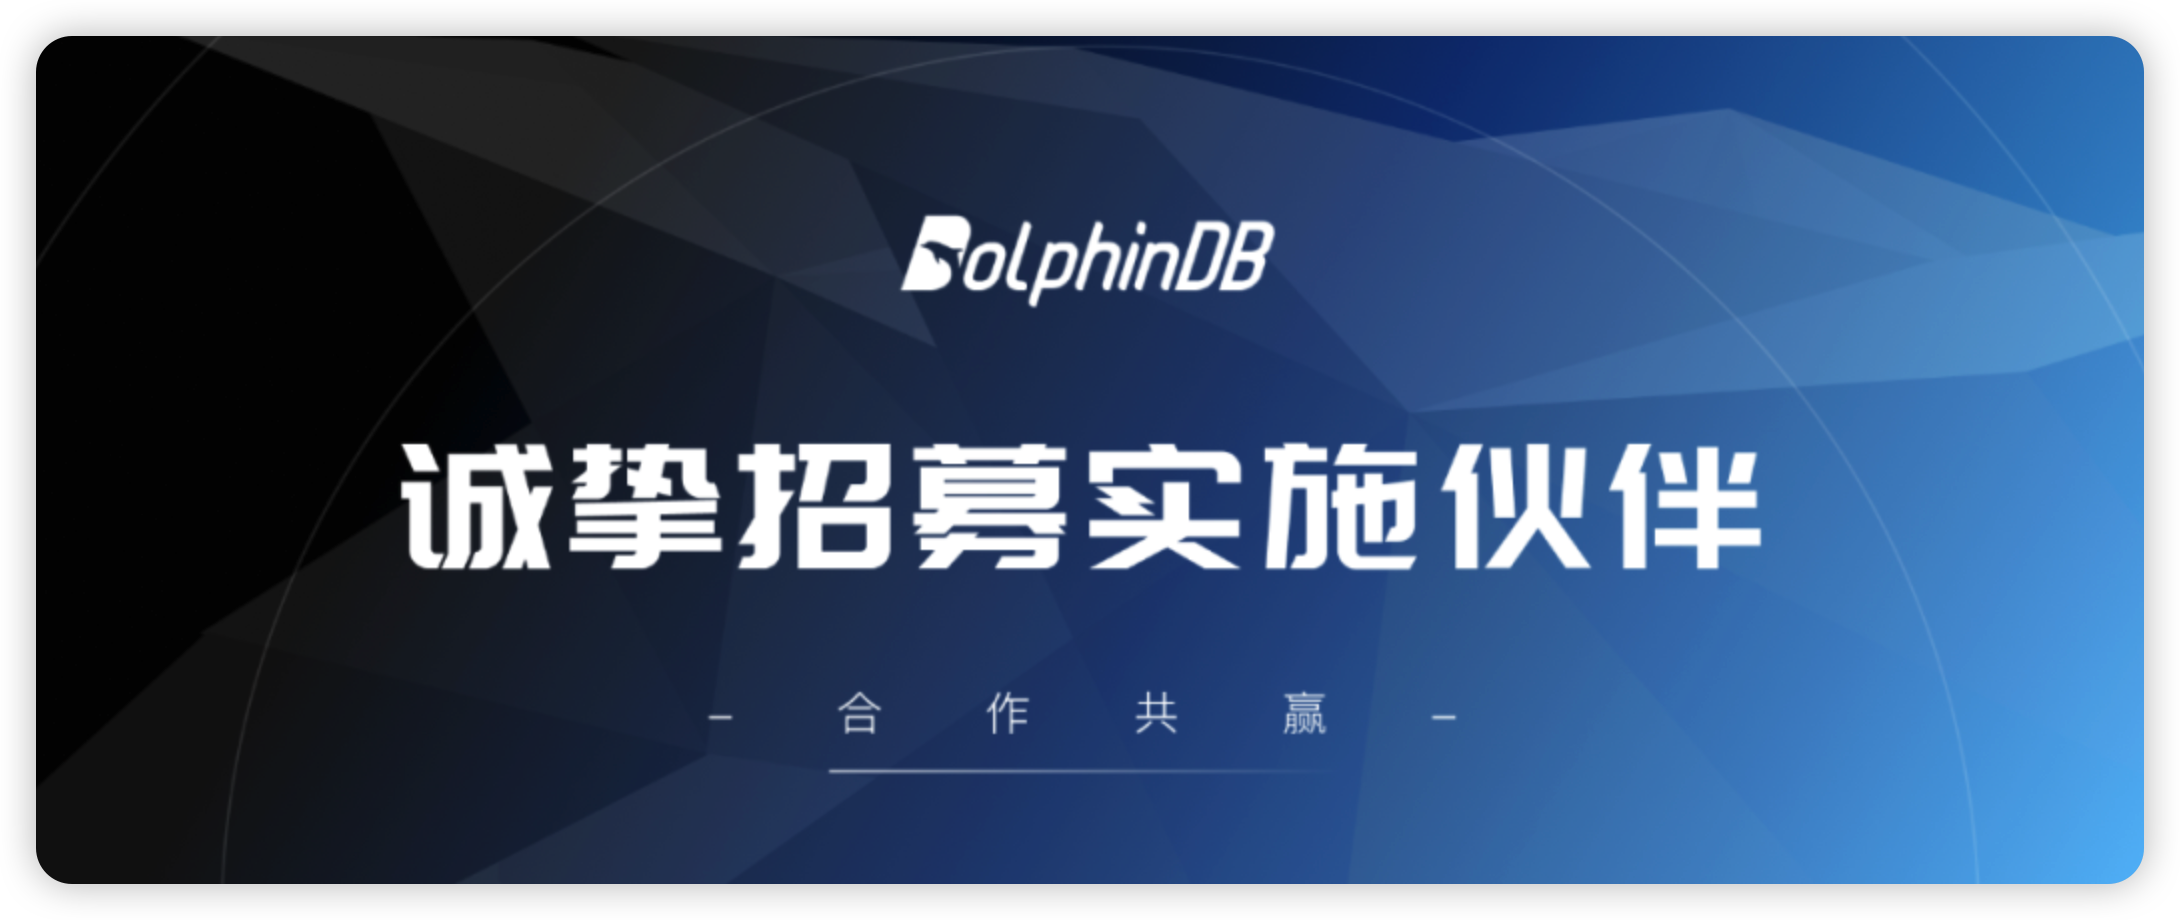 合作共赢 | DolphinDB 诚挚招募实施伙伴